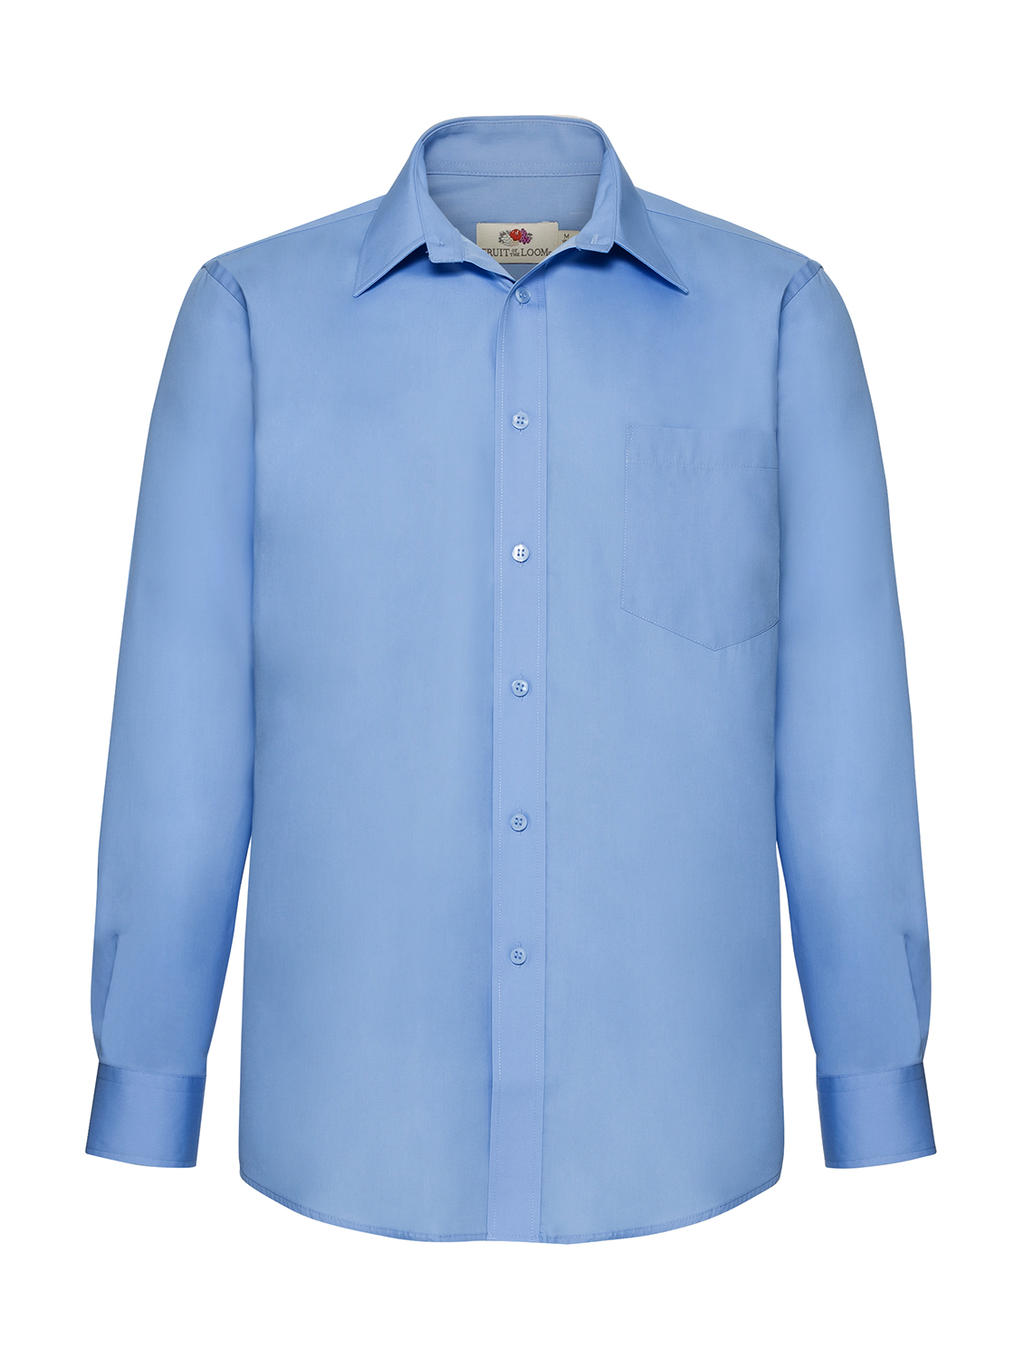  Poplin Shirt LS in Farbe Mid Blue